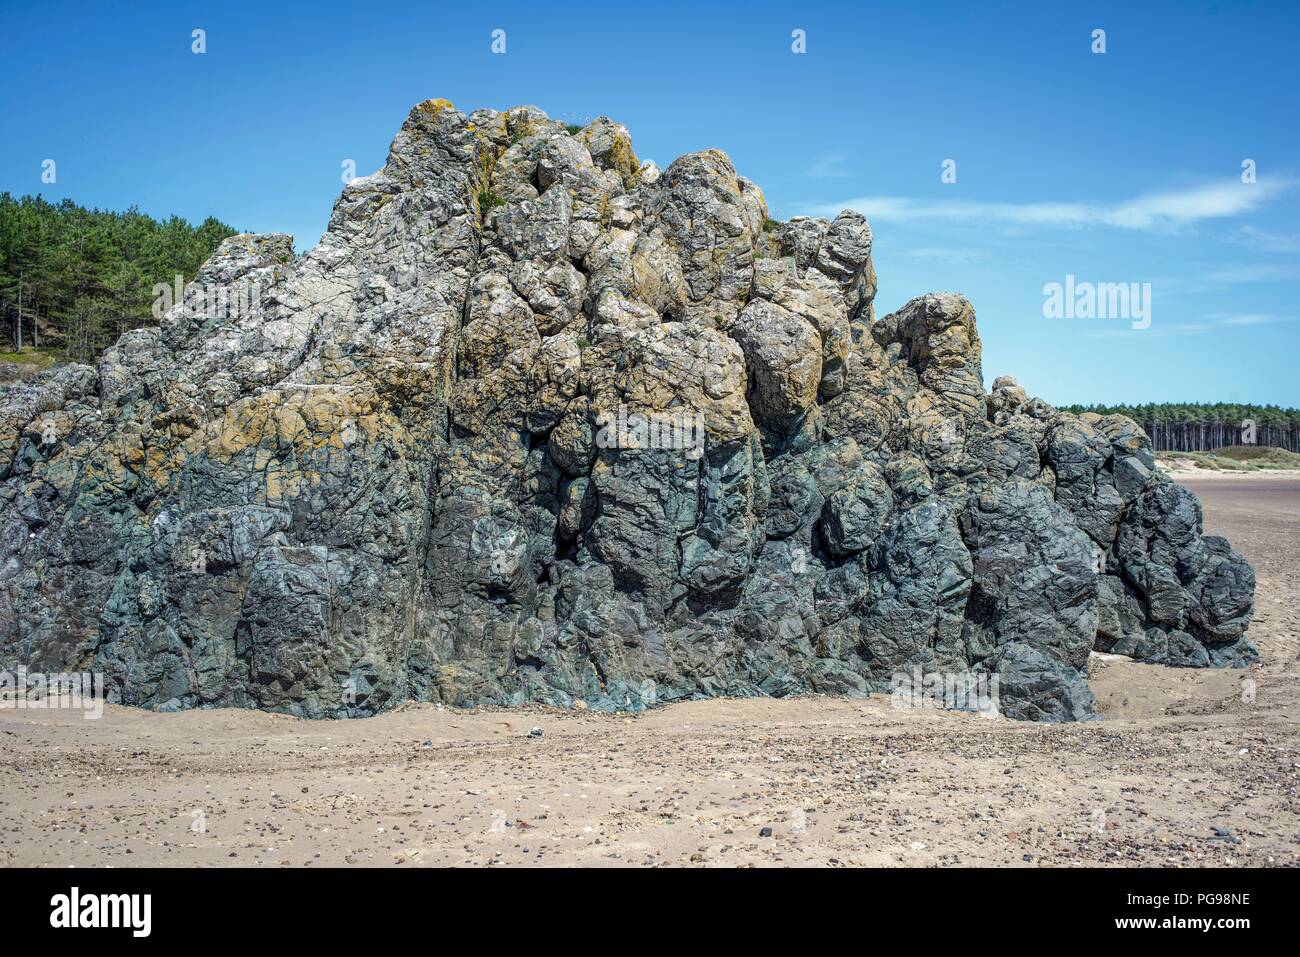 De laves basaltiques formées à partir de l'activité volcanique sous-marine entre 500 et 600 millions d'années. Photographié à Newborough Sands, Anglesey, Pays de Galles, Royaume-Uni. Banque D'Images